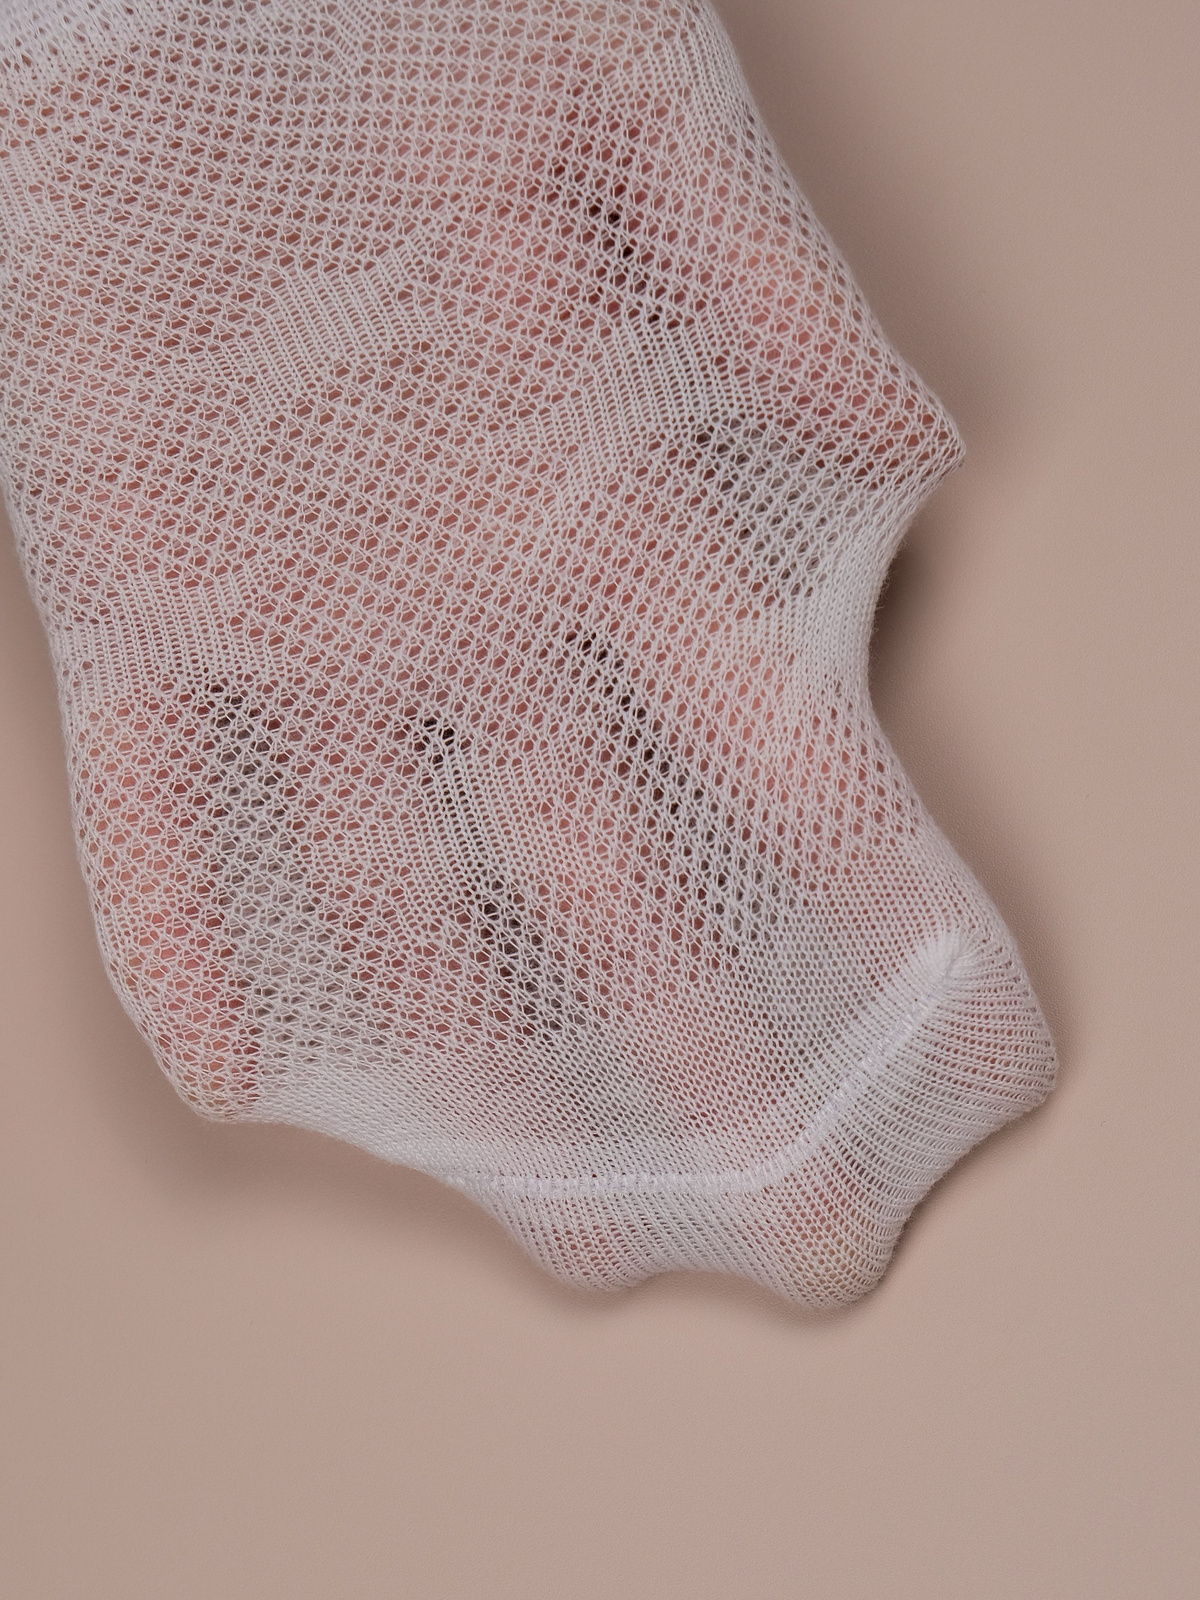 Дышащий материал носков, а также материал сетки позволяют ножкам не потеть, дышать и комфортно себя чувствовать.